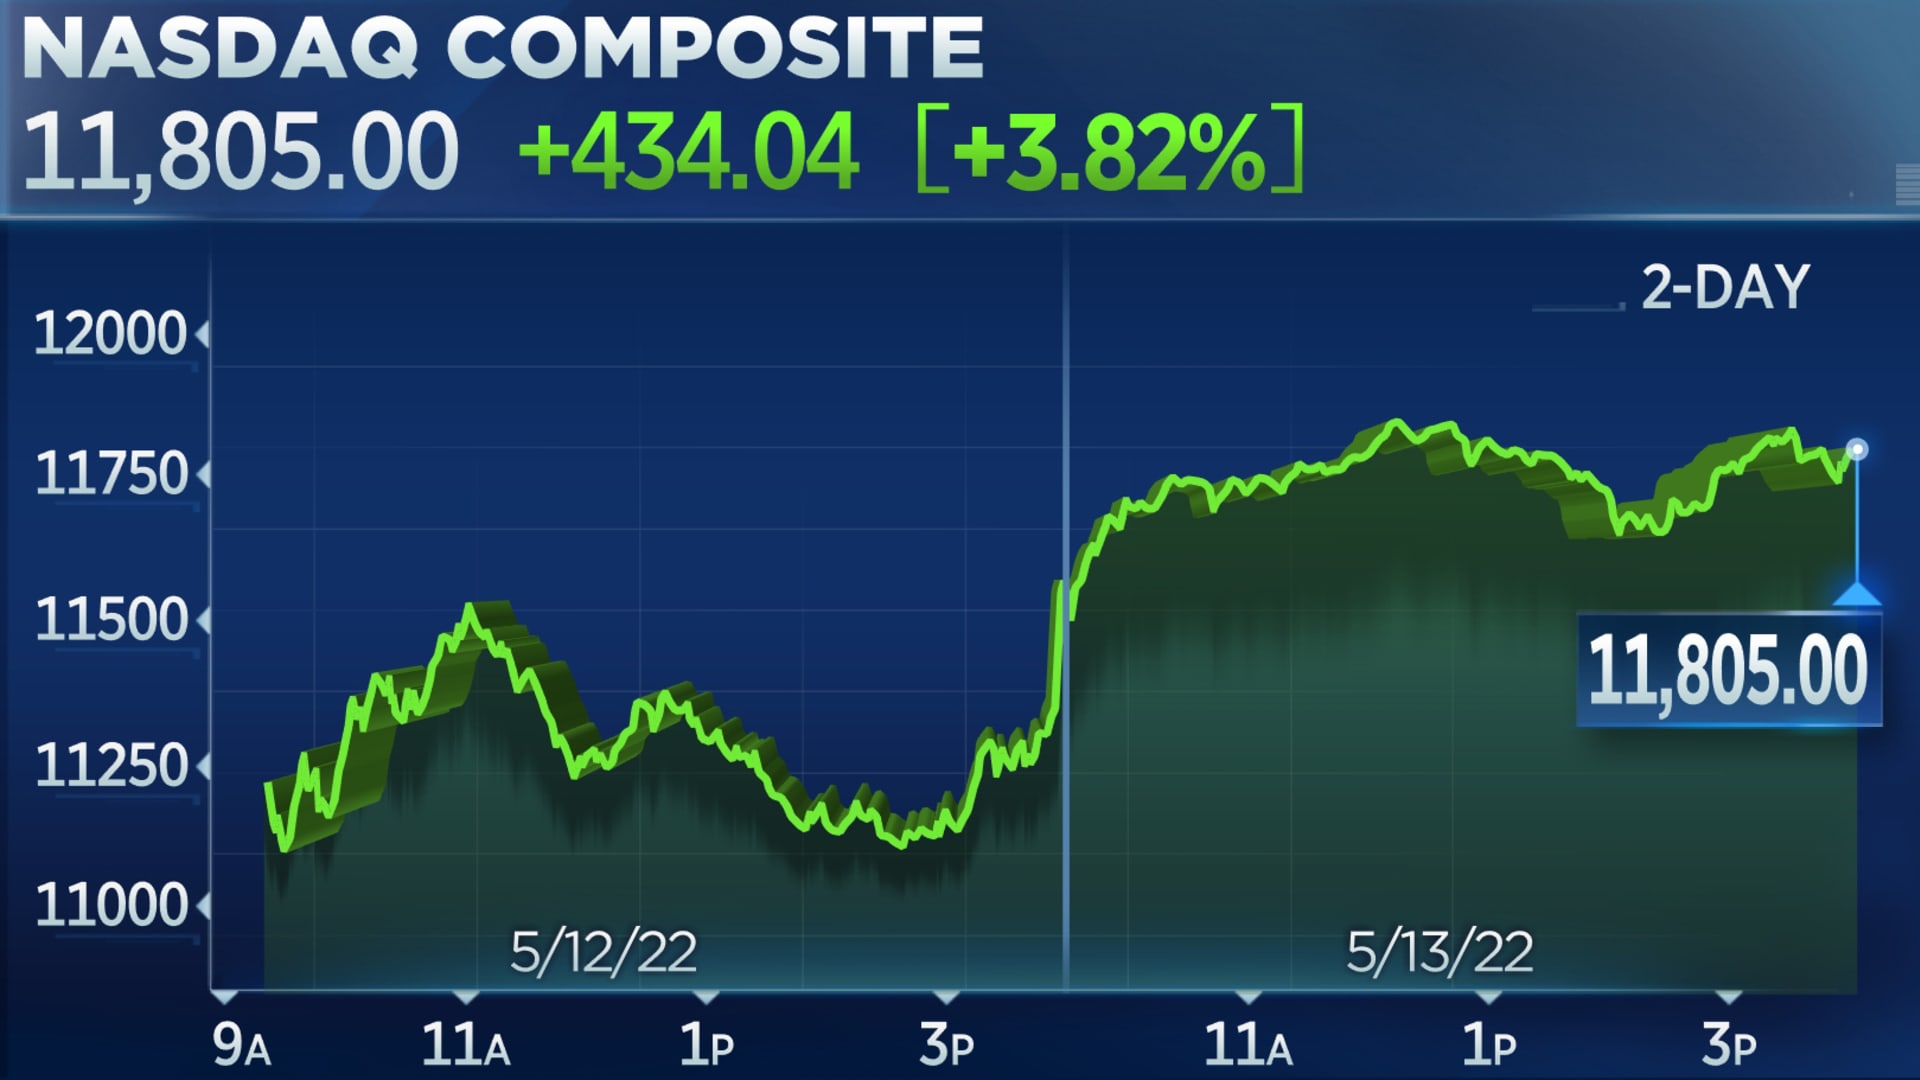 Nasdaq sovraperforma il 3%, Dow balza di 400 punti in rally dopo le pesanti perdite di inizio settimana